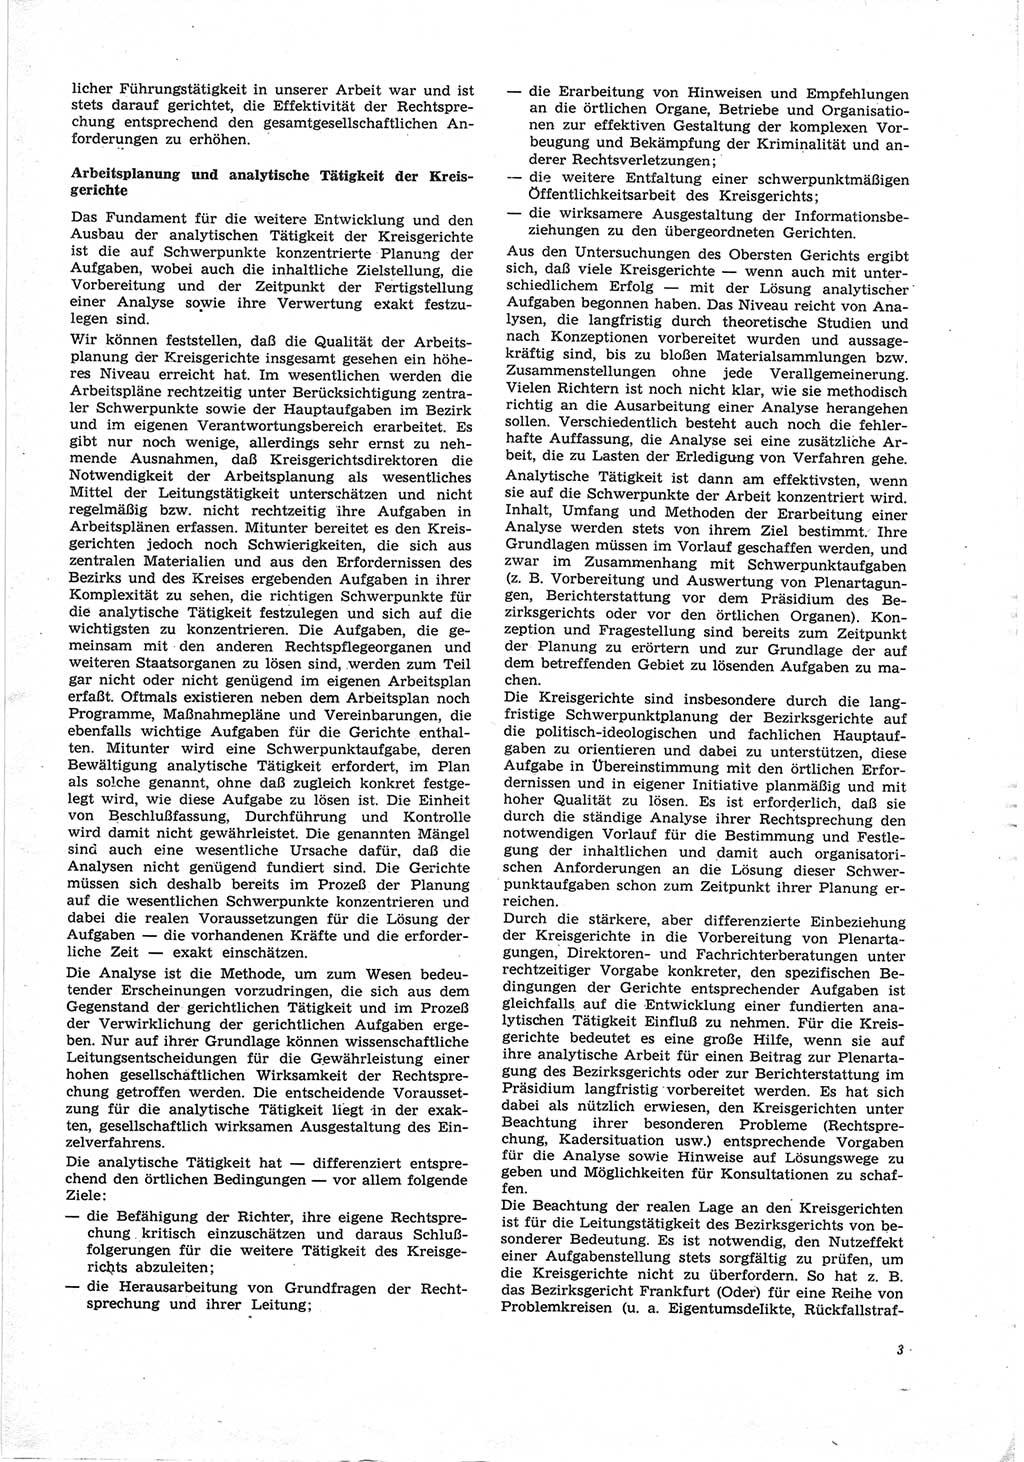 Neue Justiz (NJ), Zeitschrift für Recht und Rechtswissenschaft [Deutsche Demokratische Republik (DDR)], 25. Jahrgang 1971, Seite 3 (NJ DDR 1971, S. 3)